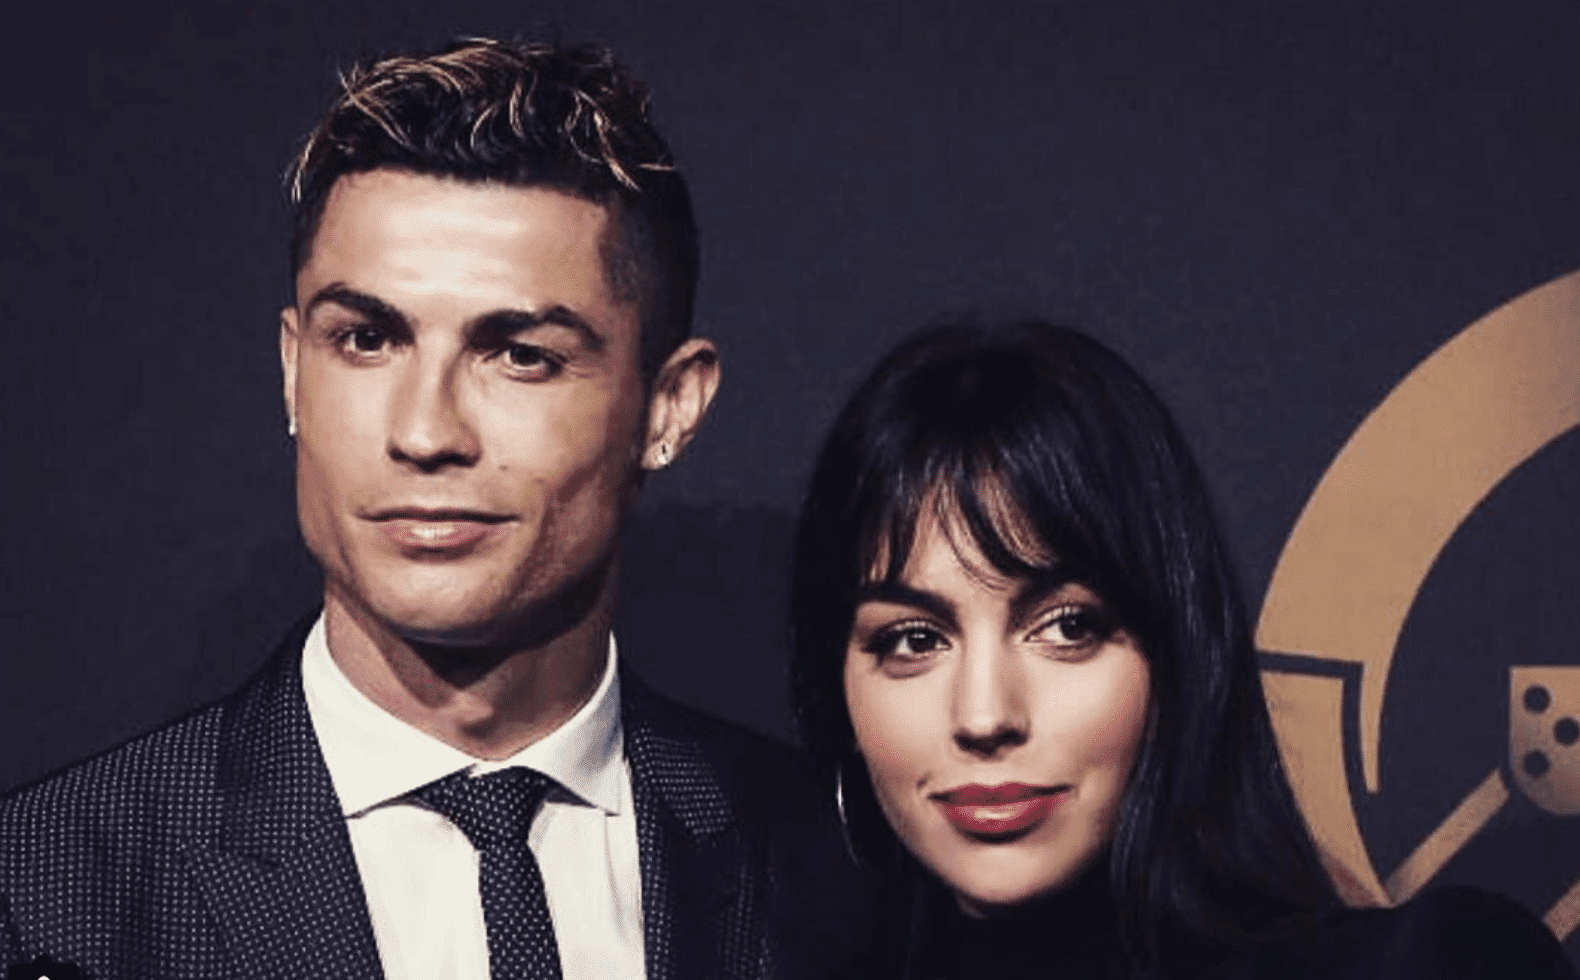 Cristiano Ronaldo e Georgina: nozze in gran segreto e cicogna in arrivo